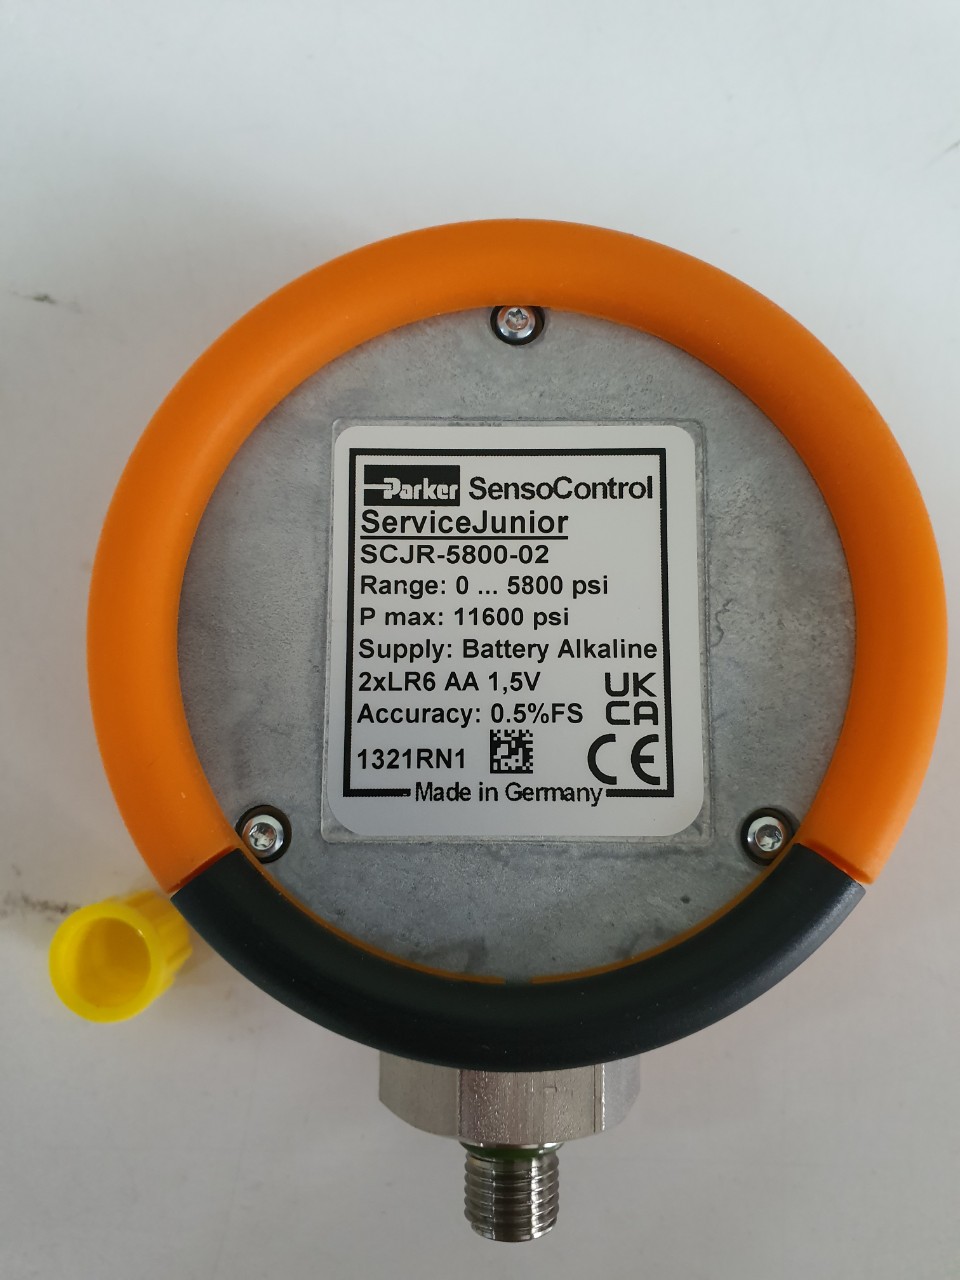 SCJR-5800-02 sensor control